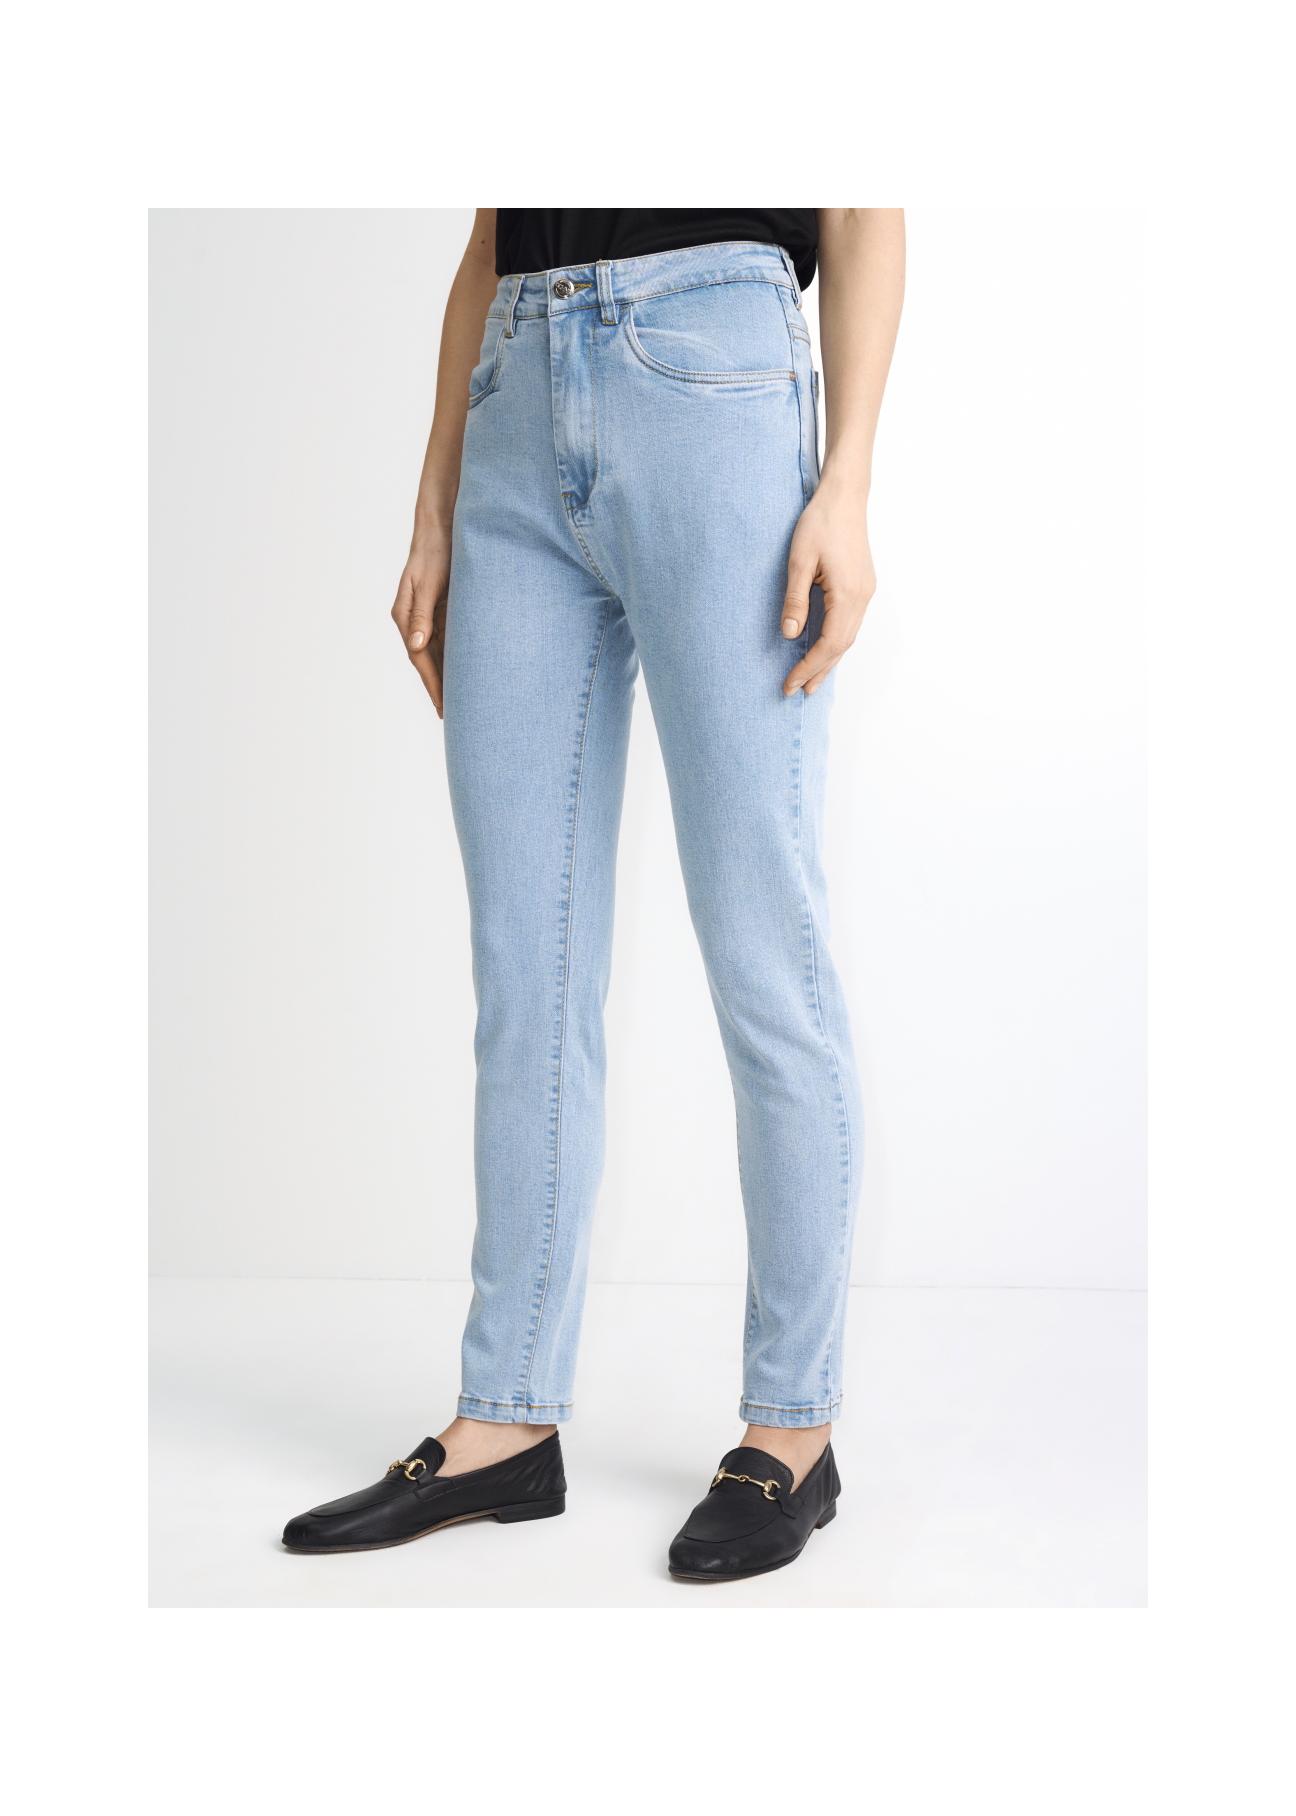 Jasne spodnie jeansowe damskie JEADT-0005-61(W22)